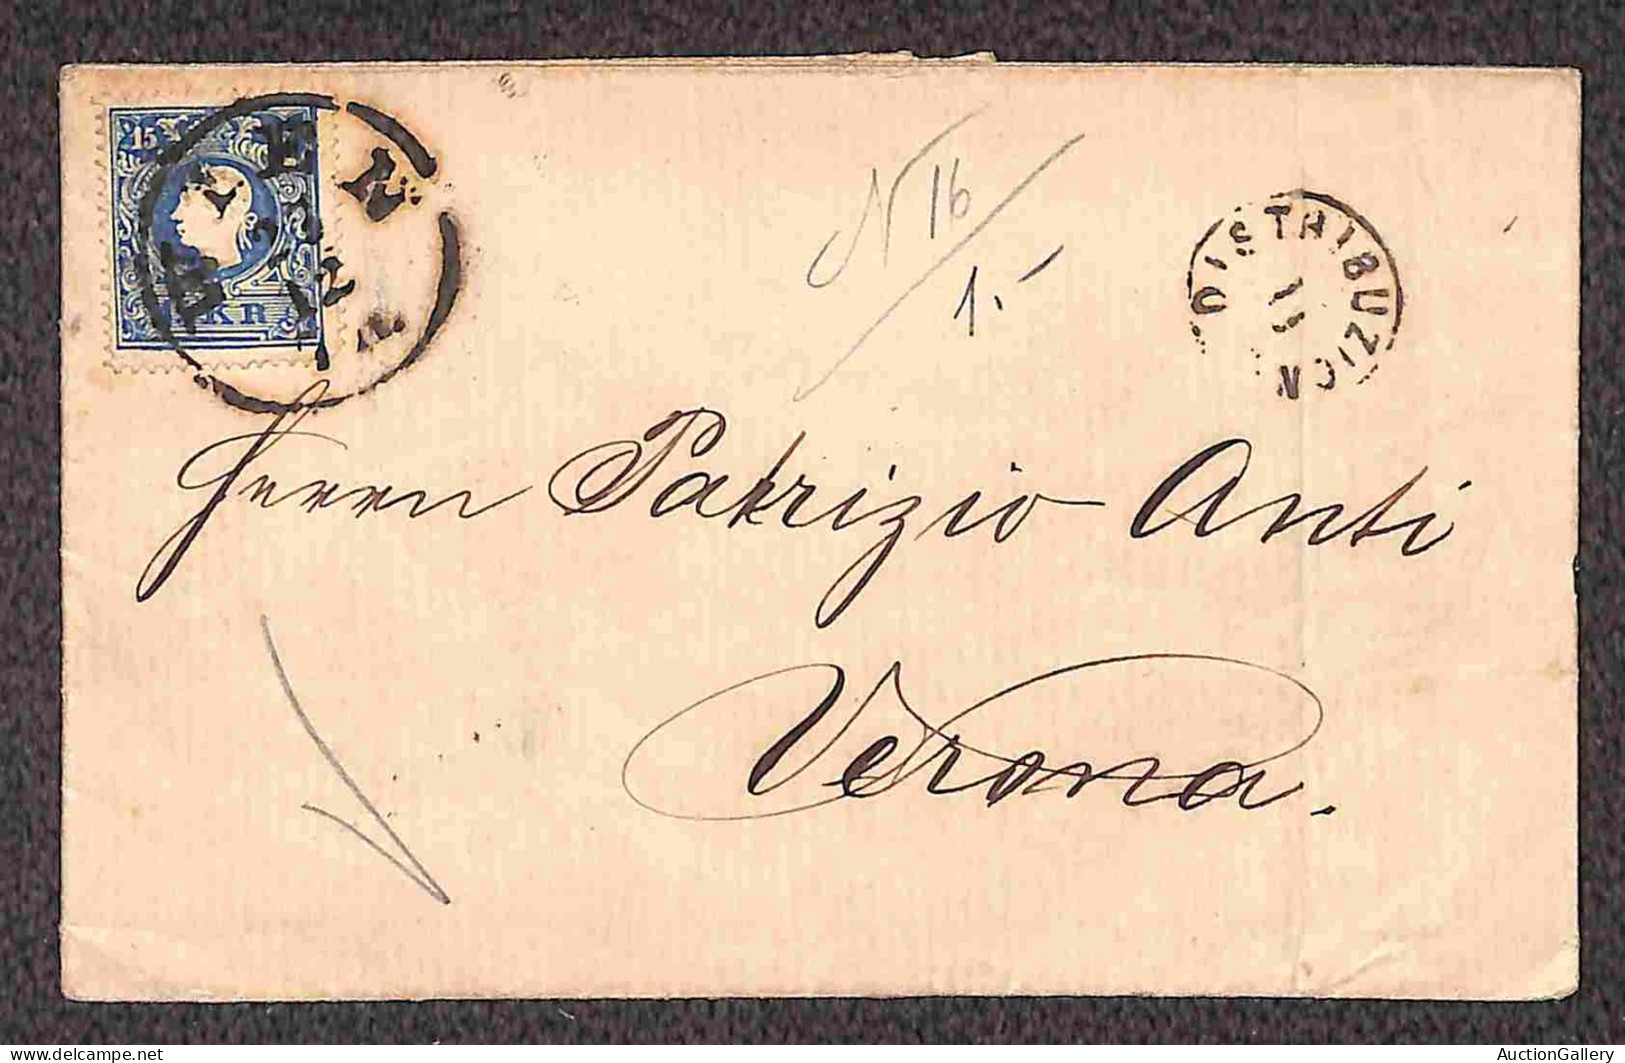 EUROPA - AUSTRIA - Distribuzione II (P.ti 4) apposto in arrivo a Verona - cinque lettere da Vienna col 15 kreuzer (15/II